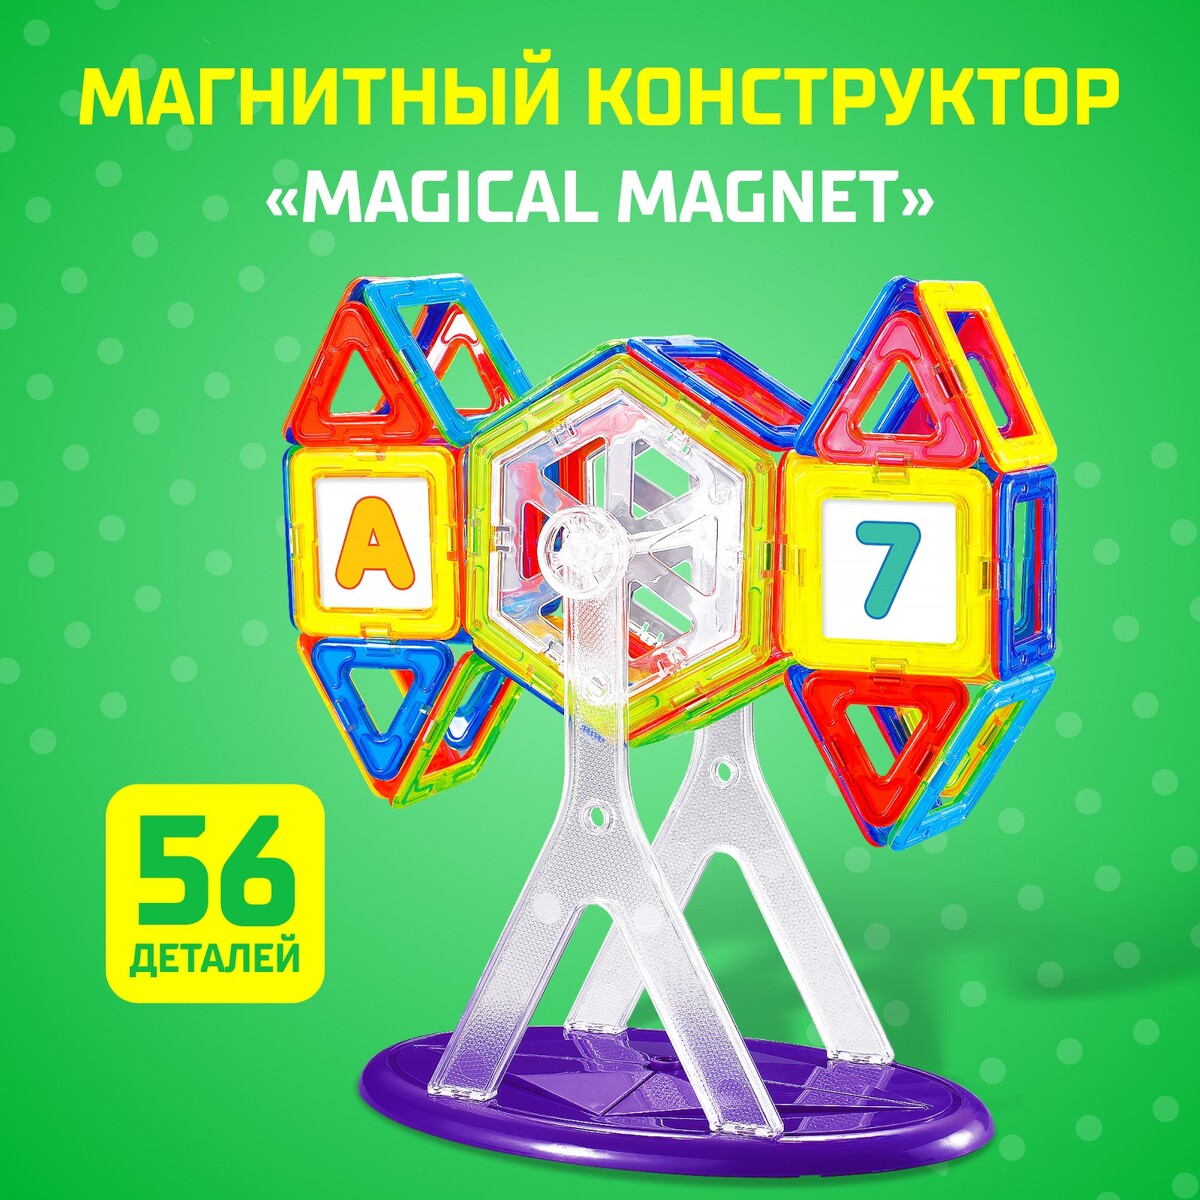 Магнитный конструктор magical magnet, 56 деталей, детали матовые конструктор магнитный 42 детали